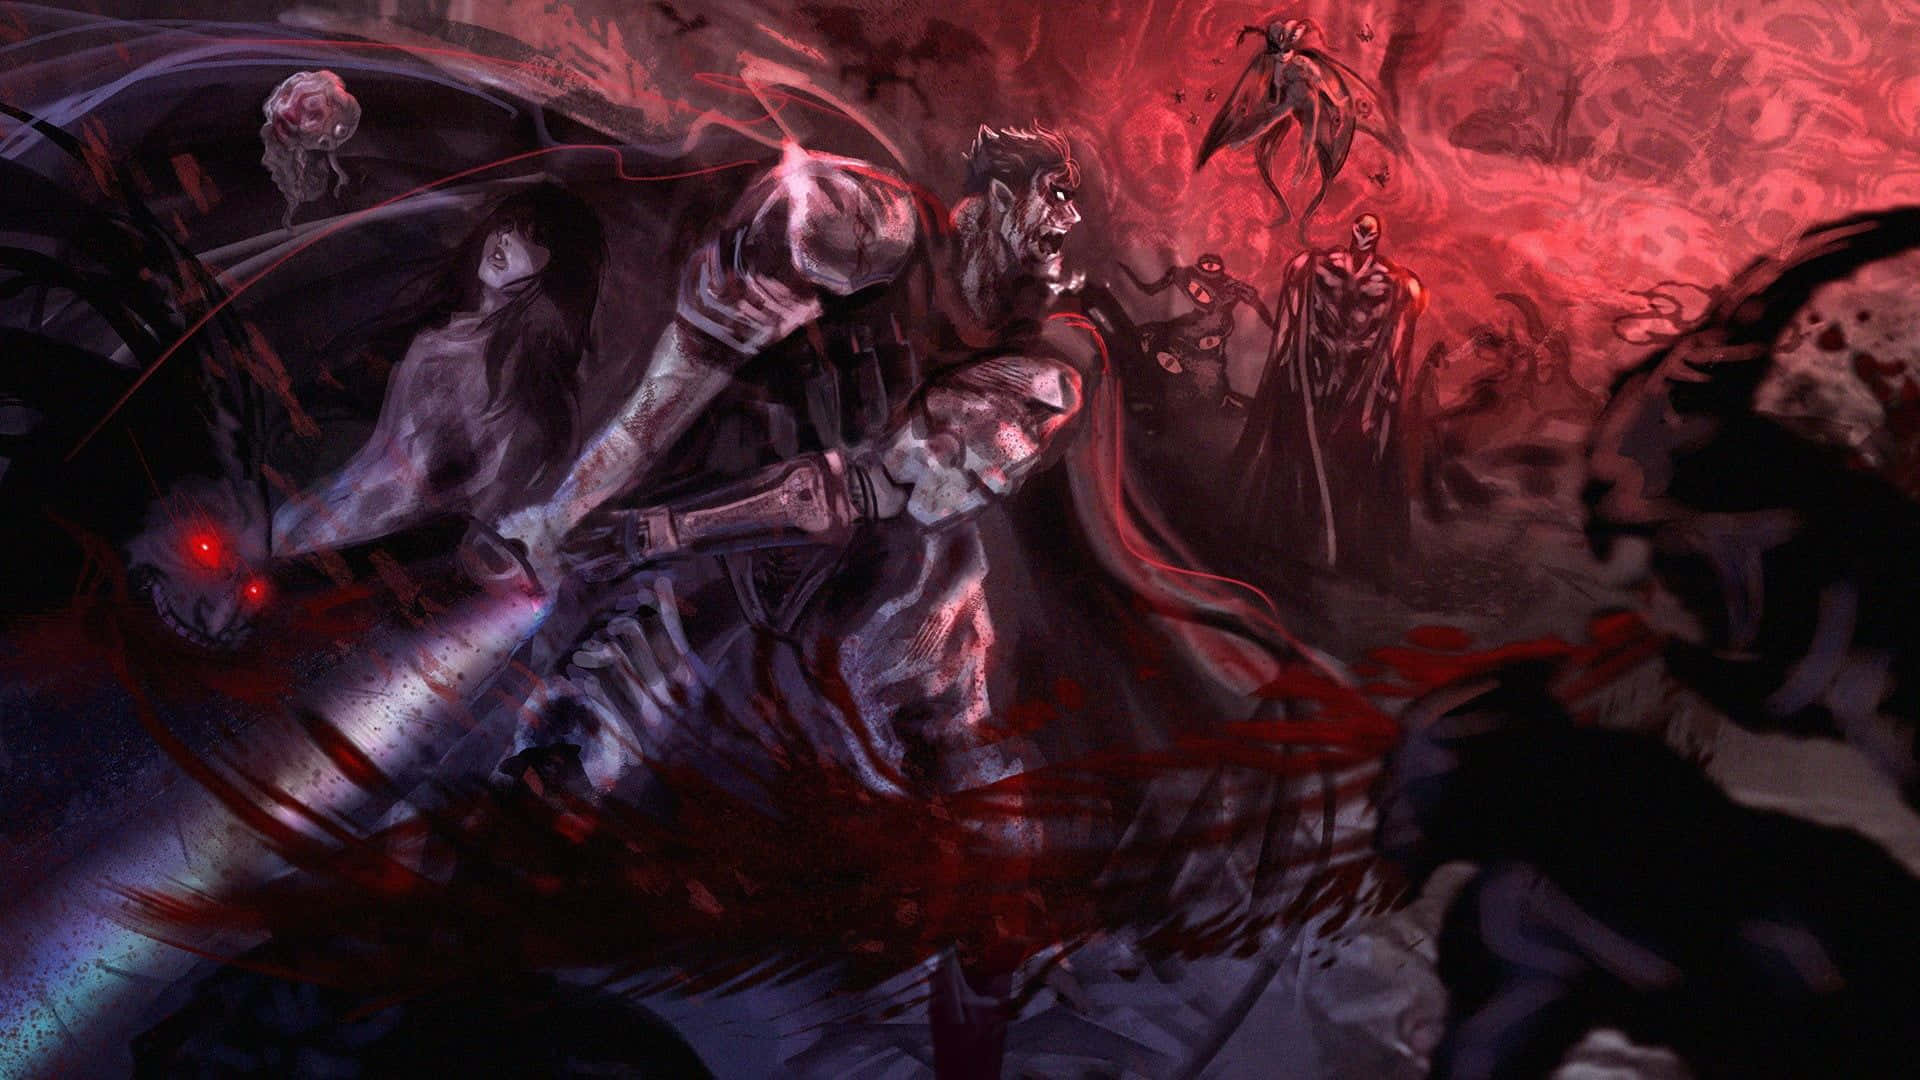 Download Fearless Warrior Casca - Berserk Anime Series Wallpaper